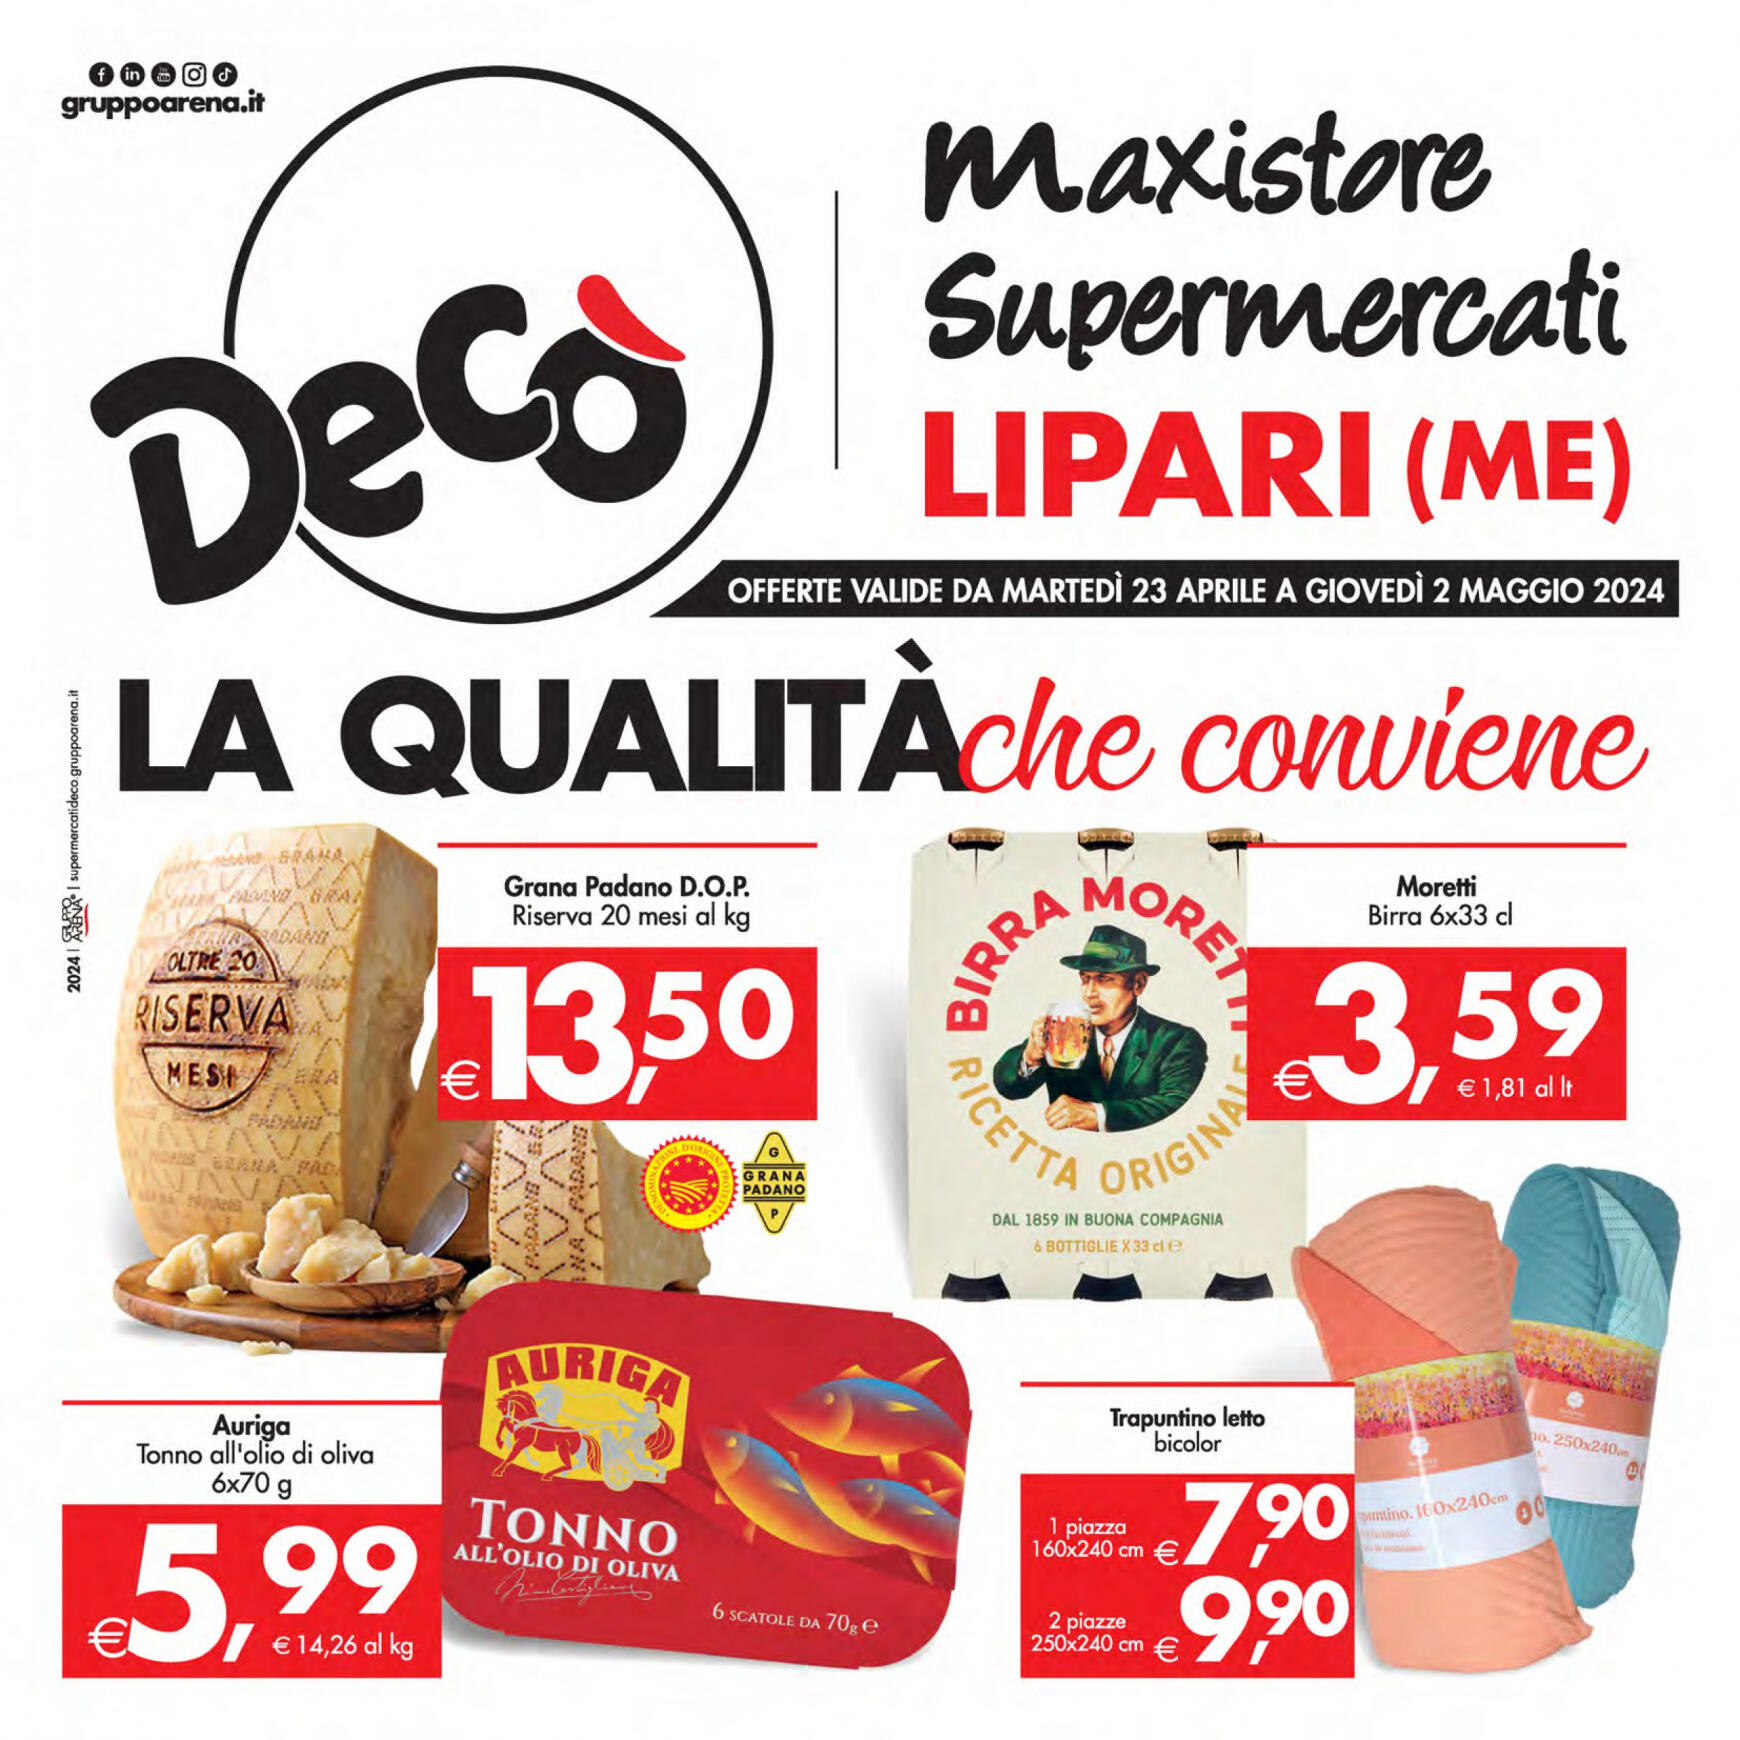 deco - Nuovo volantino Decò - Supermercati/Maxistore/Local Lipari 23.04. - 02.05.